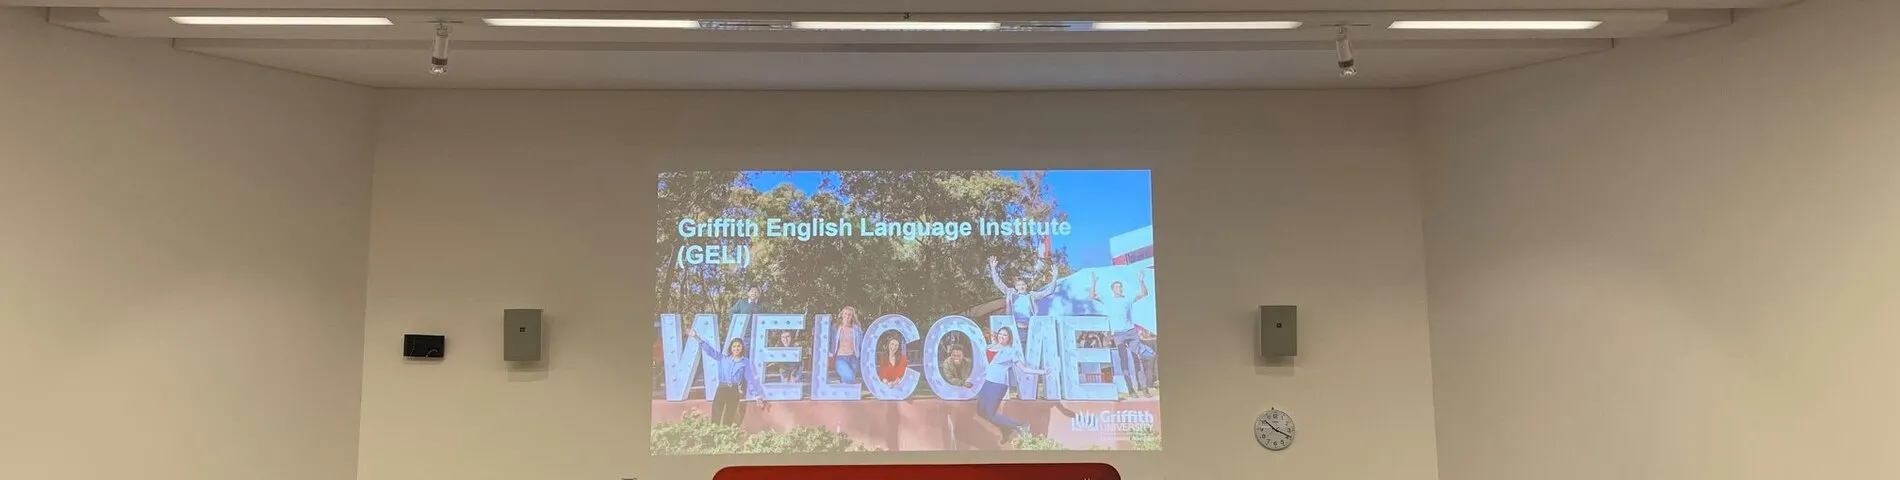 Griffith English Language Institute bilde 1